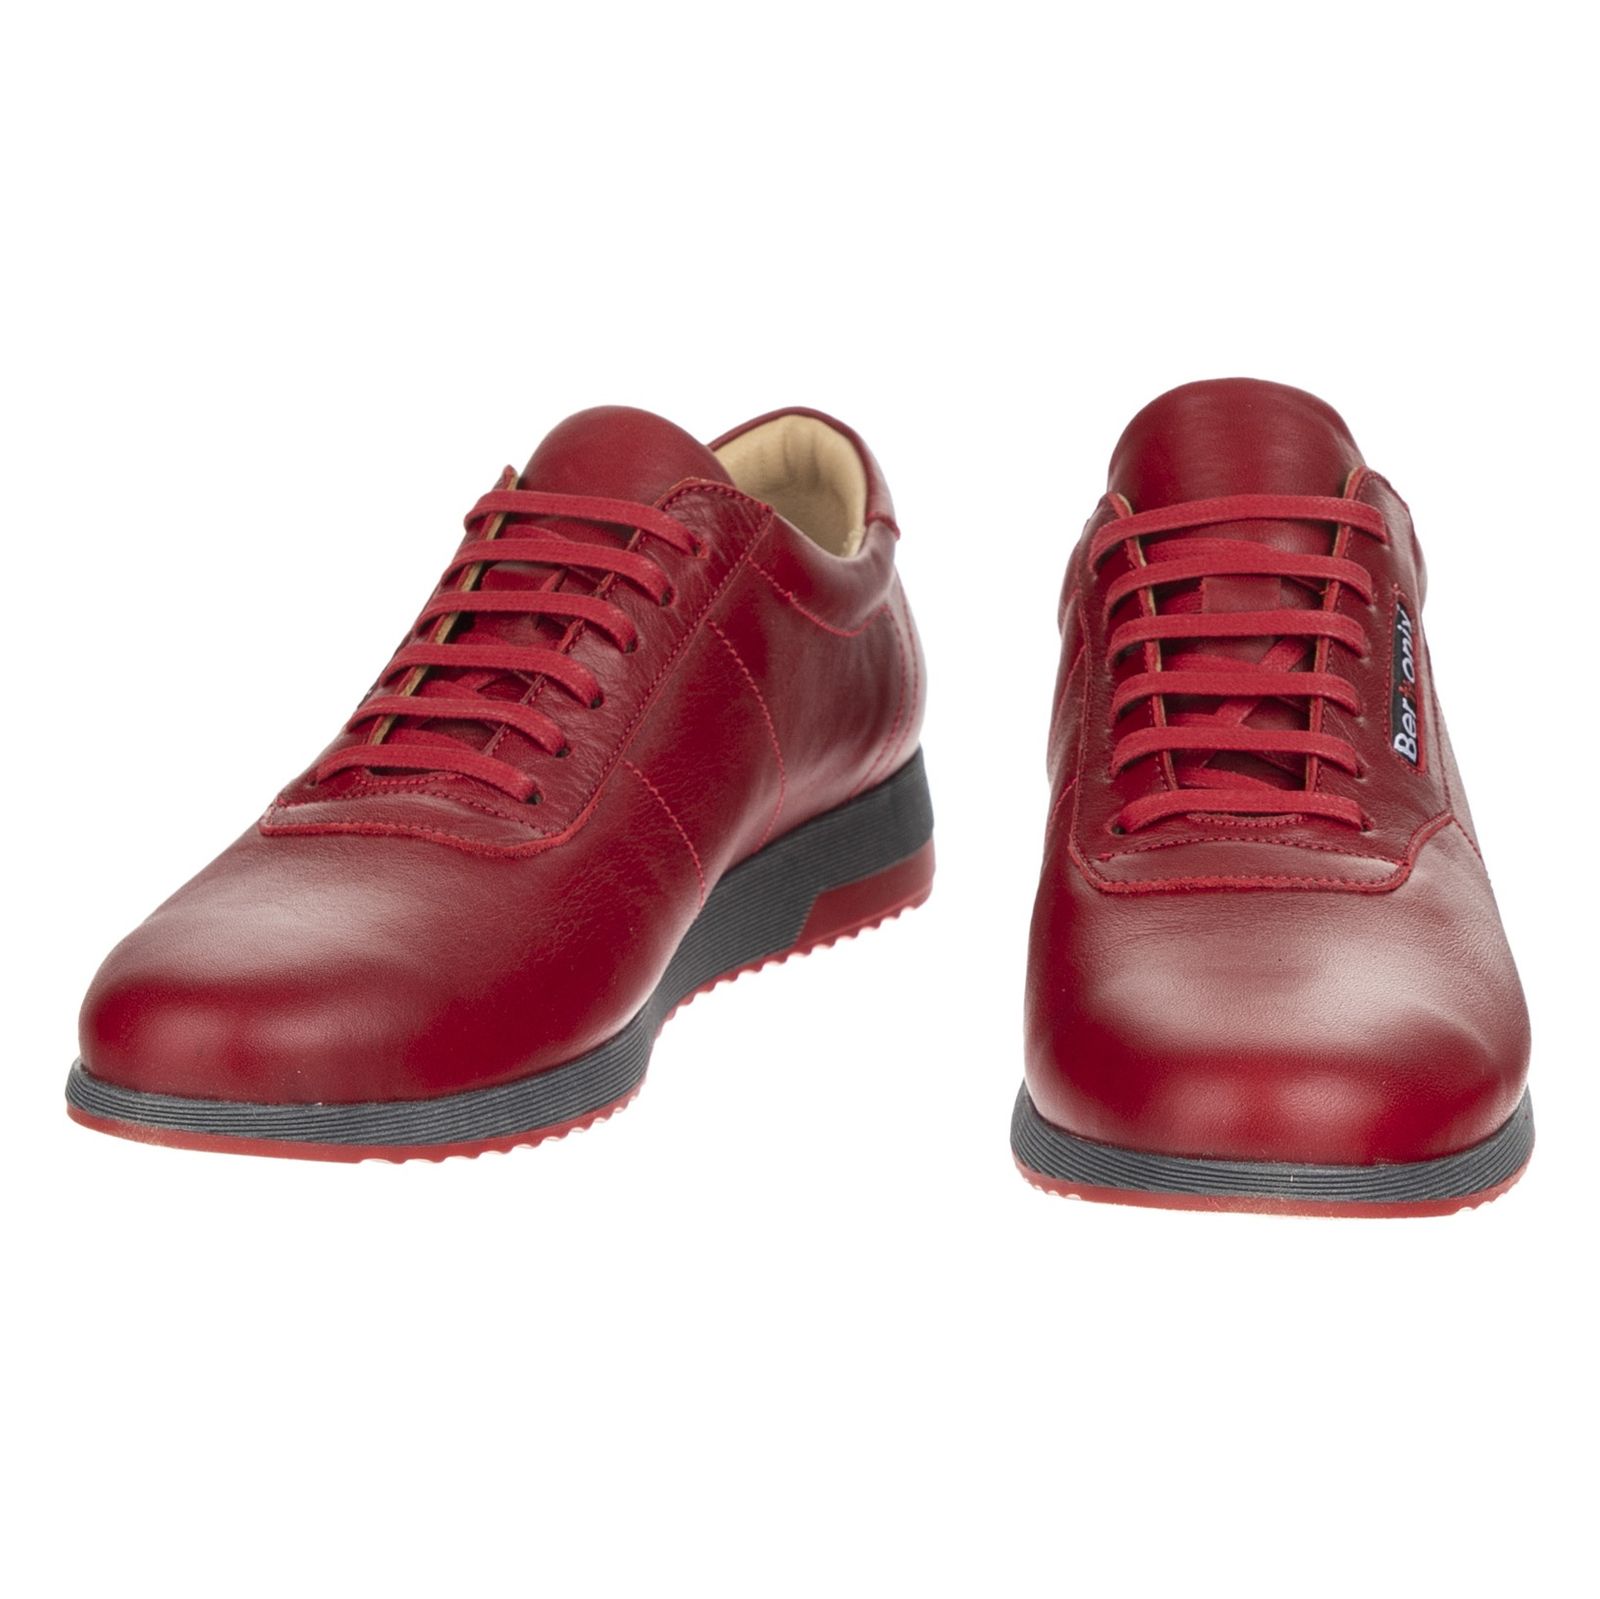 کفش روزمره زنانه برتونیکس مدل 730-24 - قرمز - 4